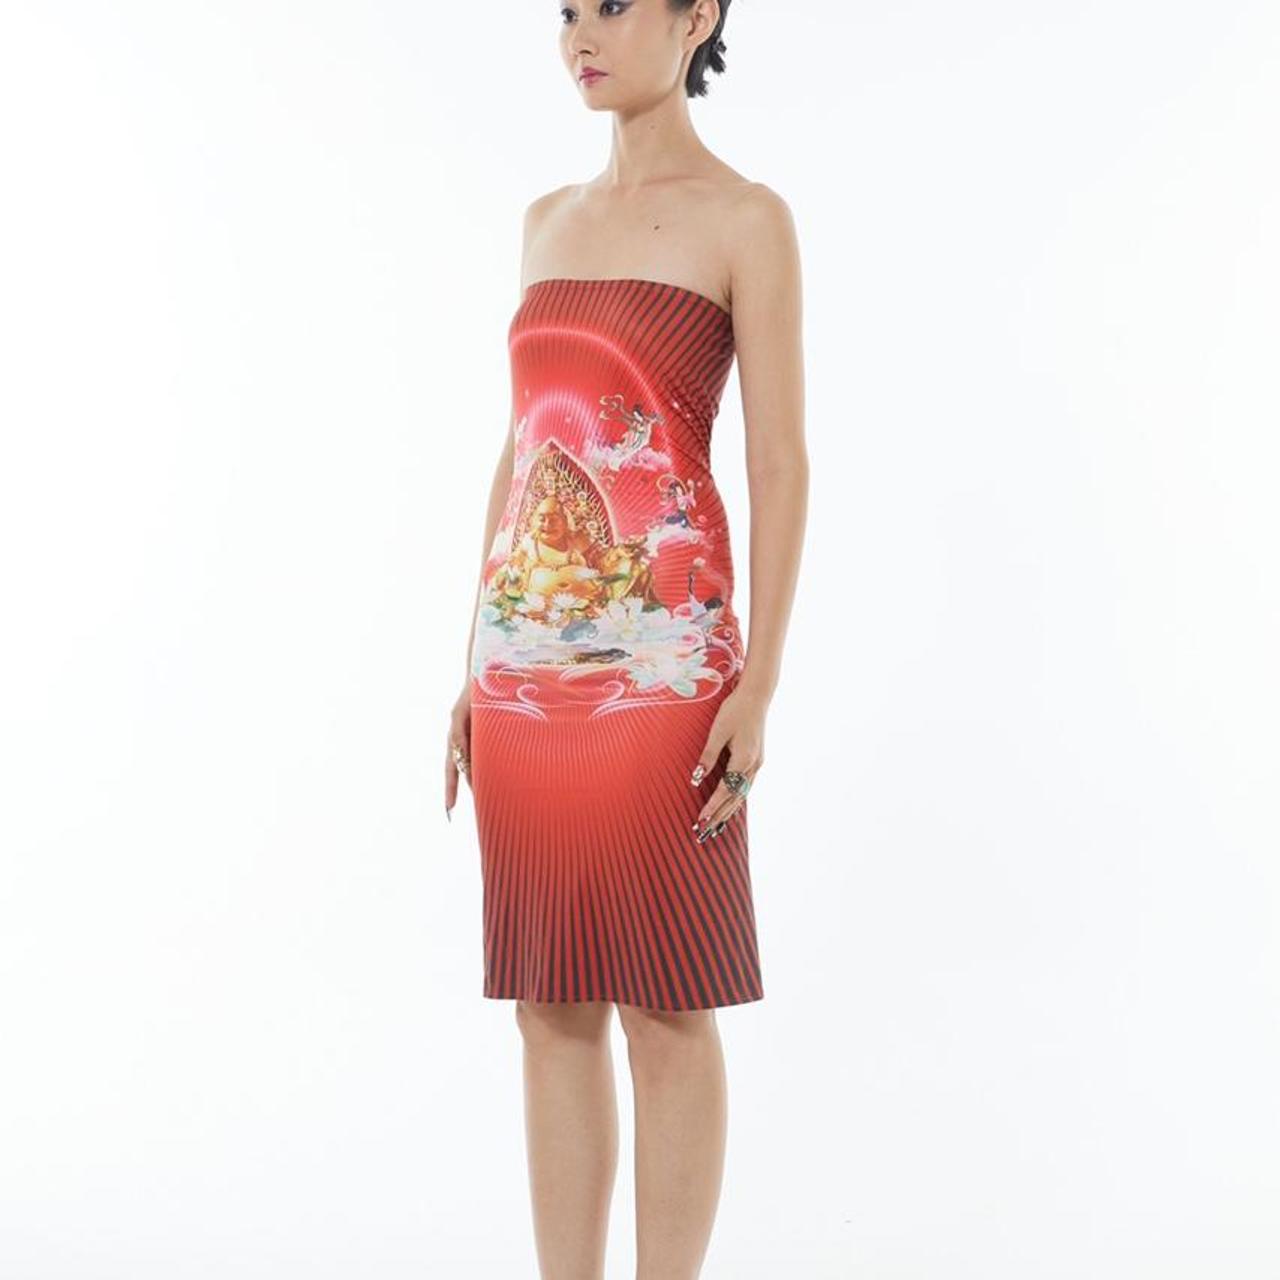 Chinese designer Buddha print two way skirt/ mini - Depop